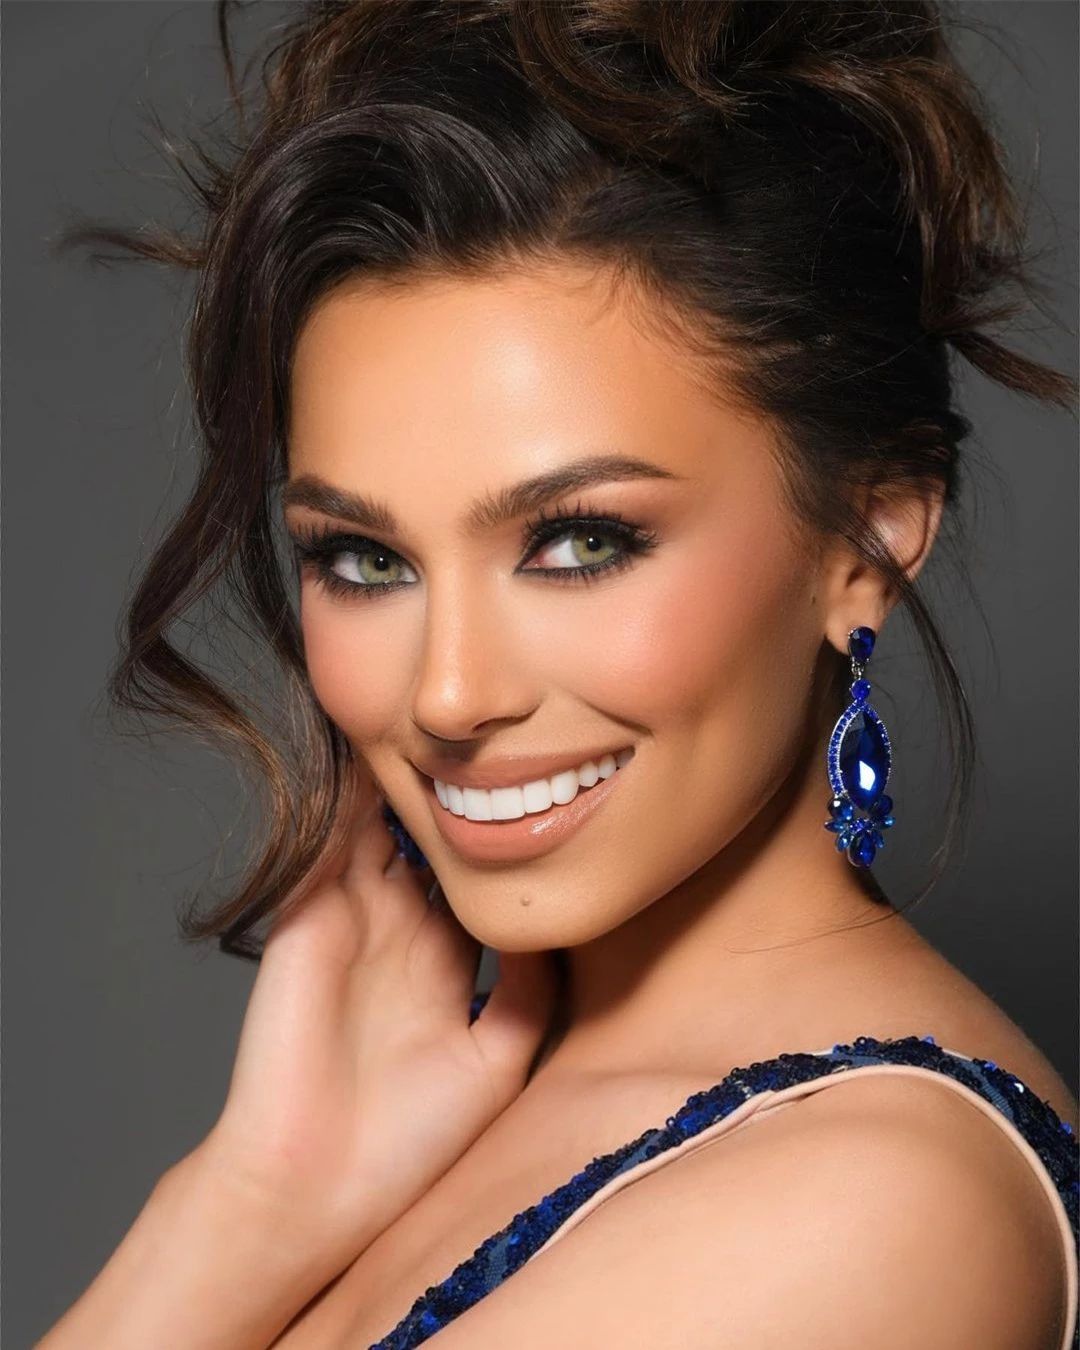 Nhan sắc người đẹp gốc Venezuela đăng quang Hoa hậu Mỹ ảnh 3